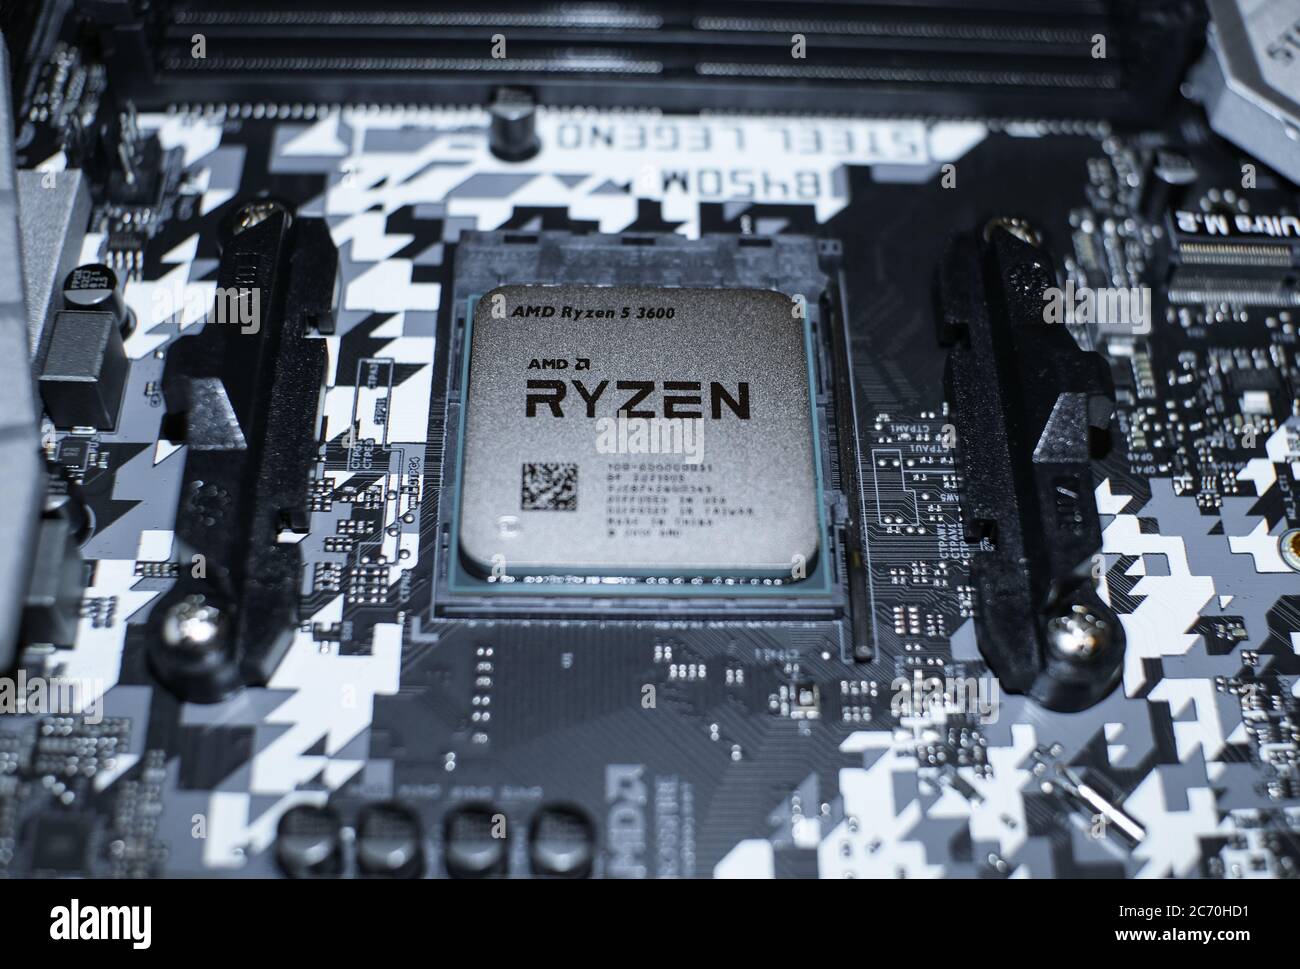 Rome, italie - 1 juillet 2020 : processeur AMD ryzen 3600 pour PC de bureau installé sur la carte mère hi tech, composants informatiques Banque D'Images